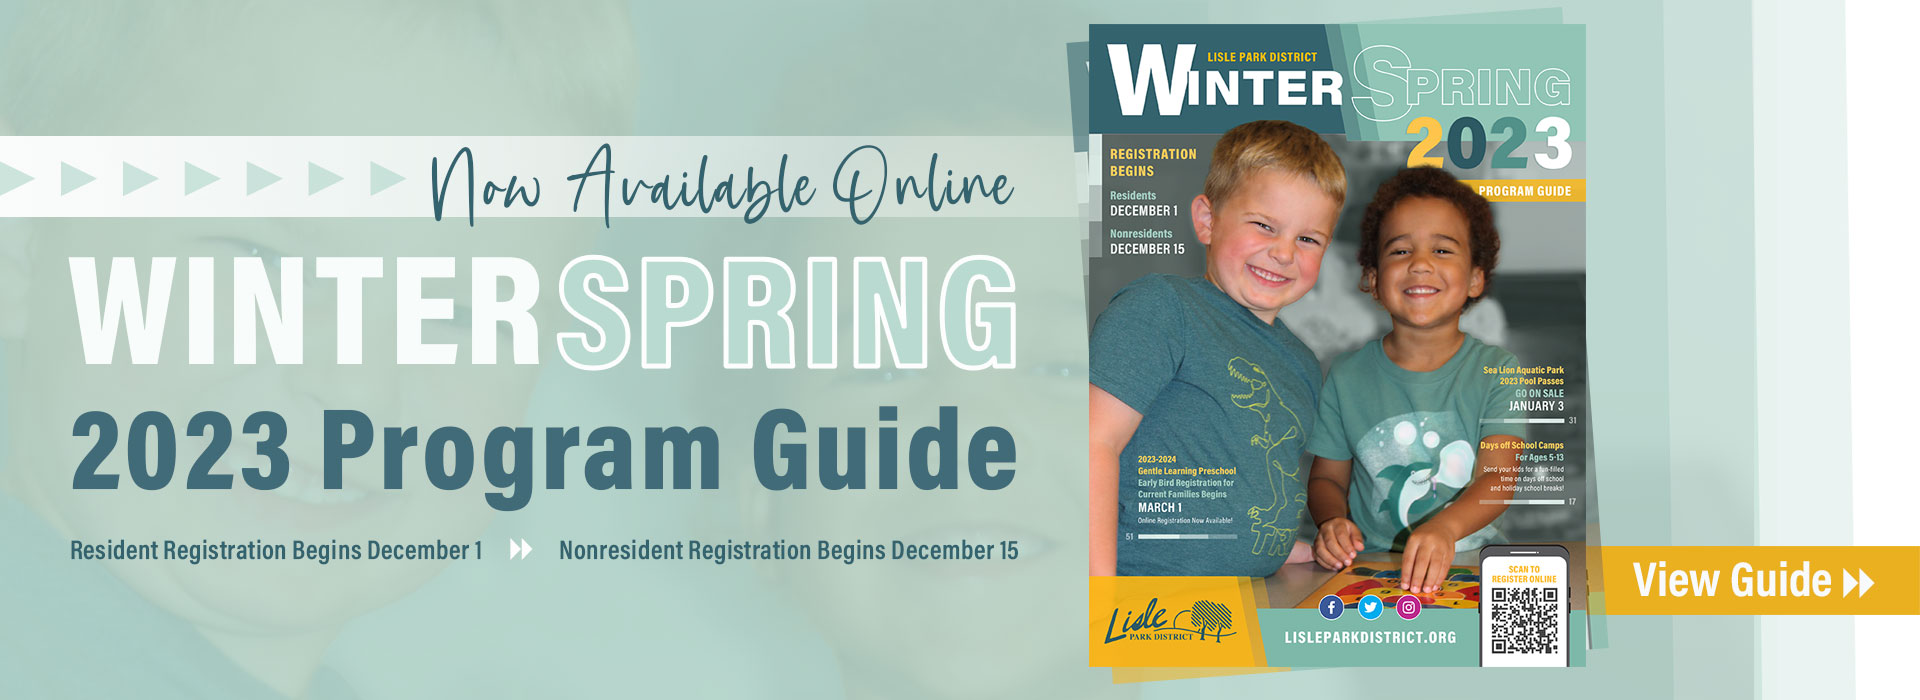 Winter-Spring Program Guide